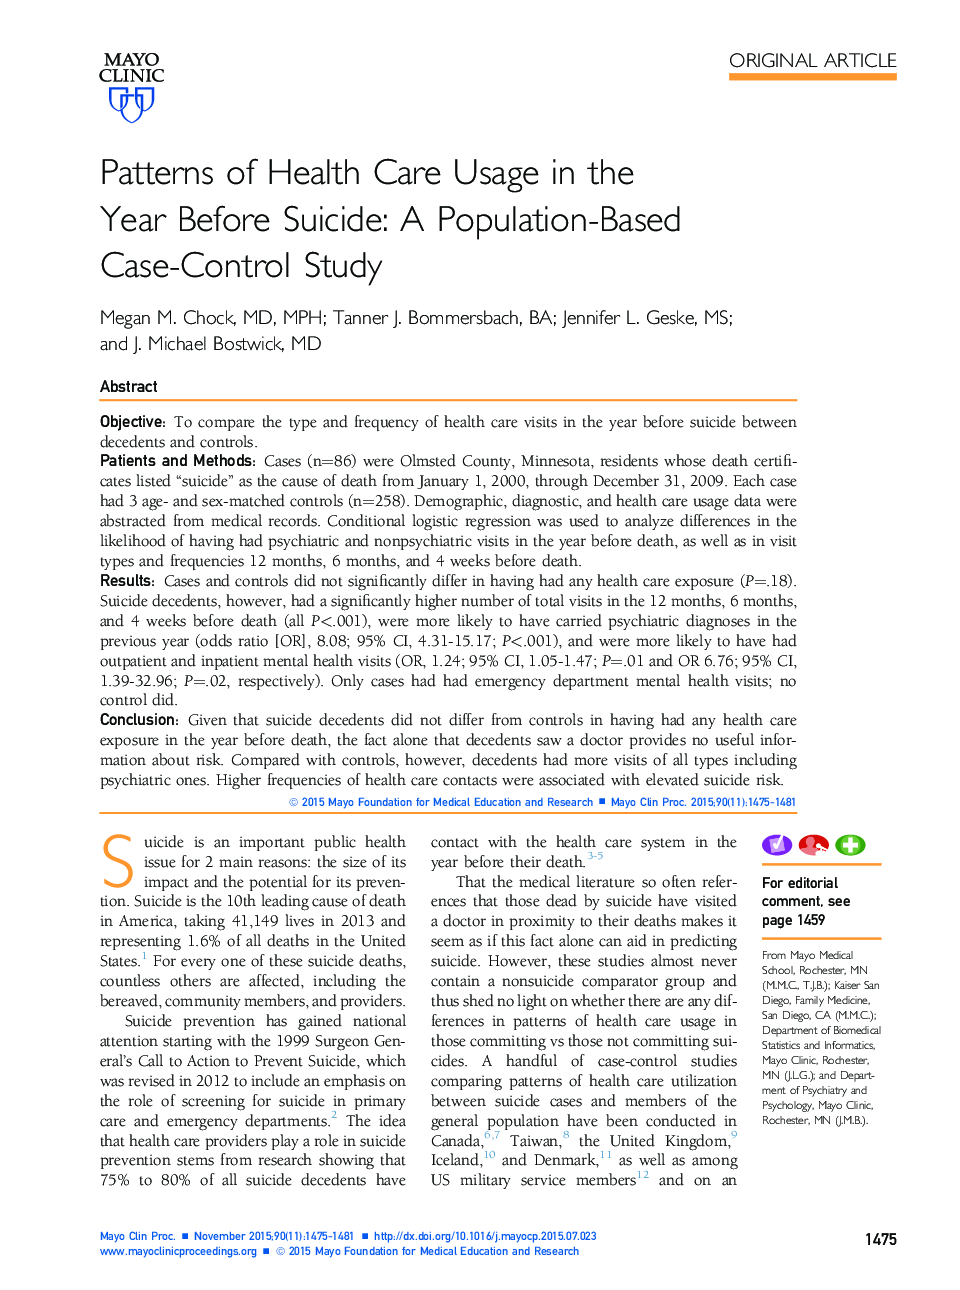 الگوهای استفاده از مراقبت های بهداشتی در سال قبل از خودکشی: مطالعه مبتنی بر جمعیت مبتنی بر مورد-شاهد 